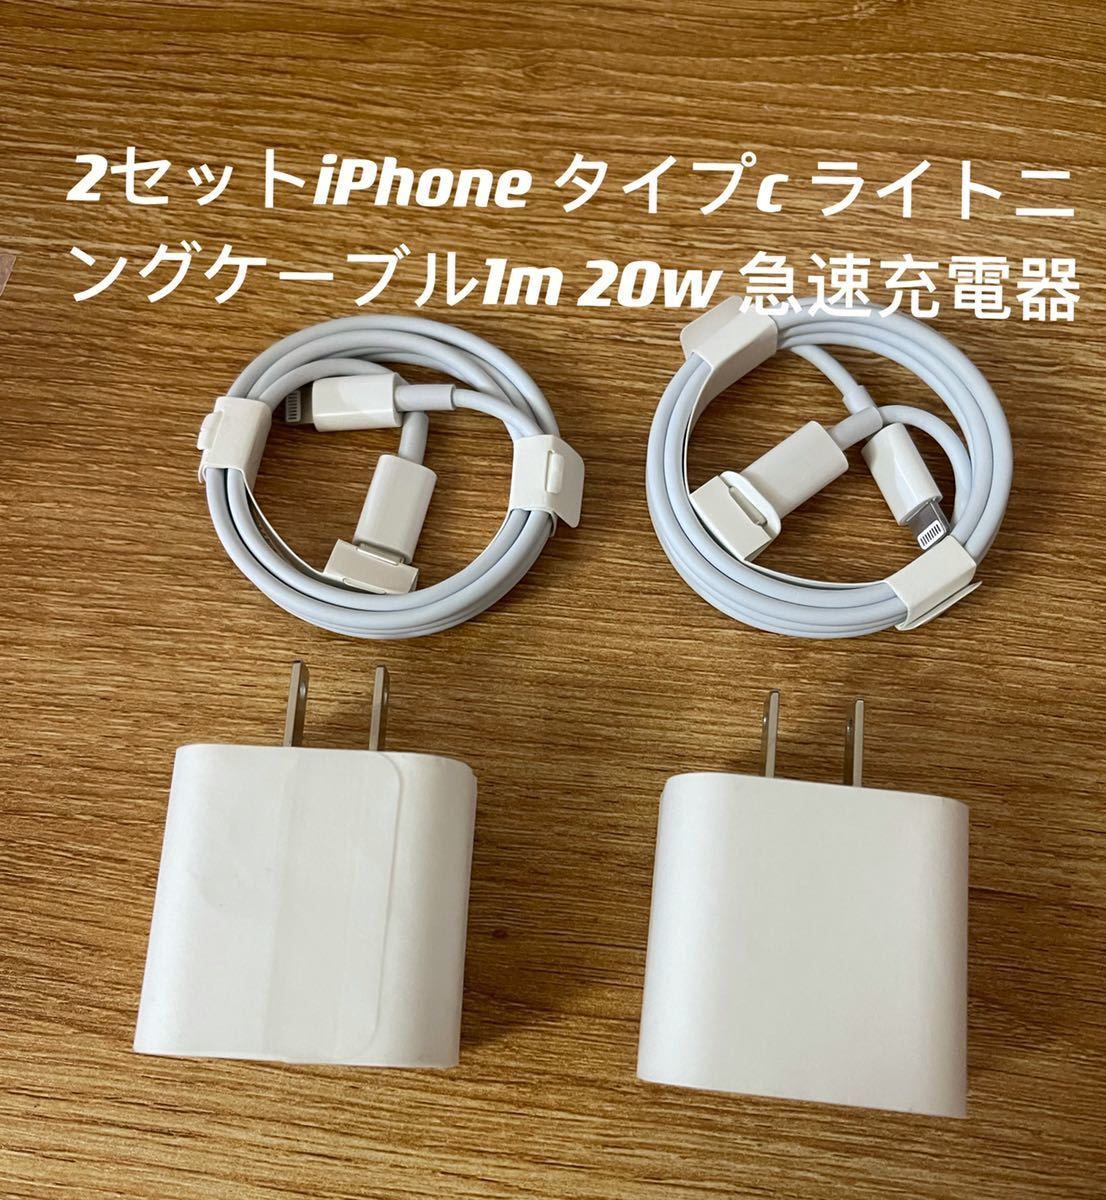 iPhone модель c подсветка кабель 1m 20w быстрое зарядное устройство 2 комплект 